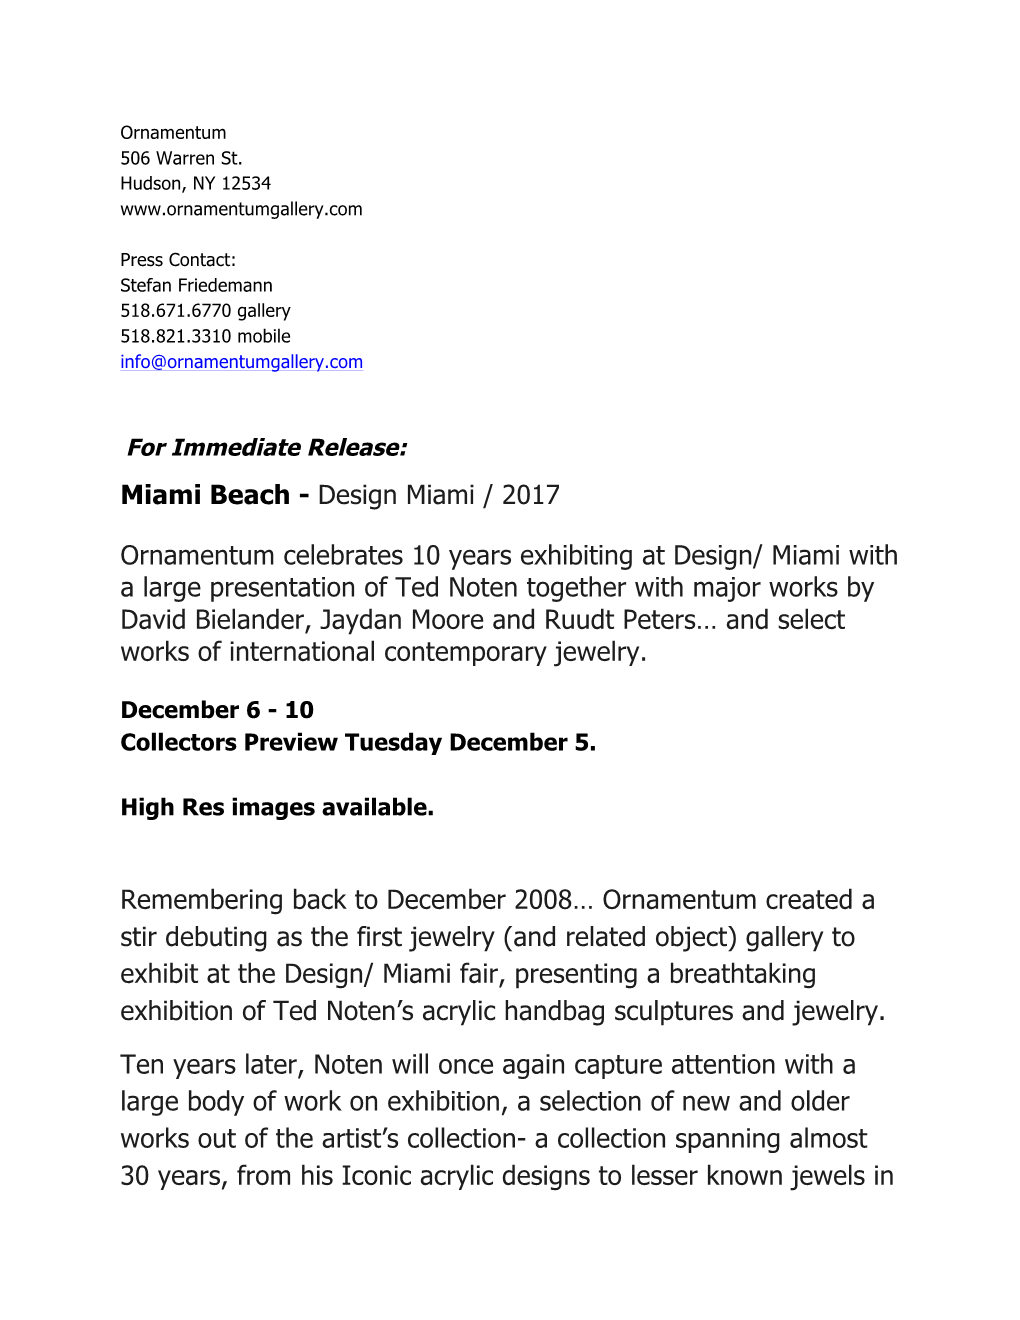 Ornamentum Design Miami 2017 Press Release